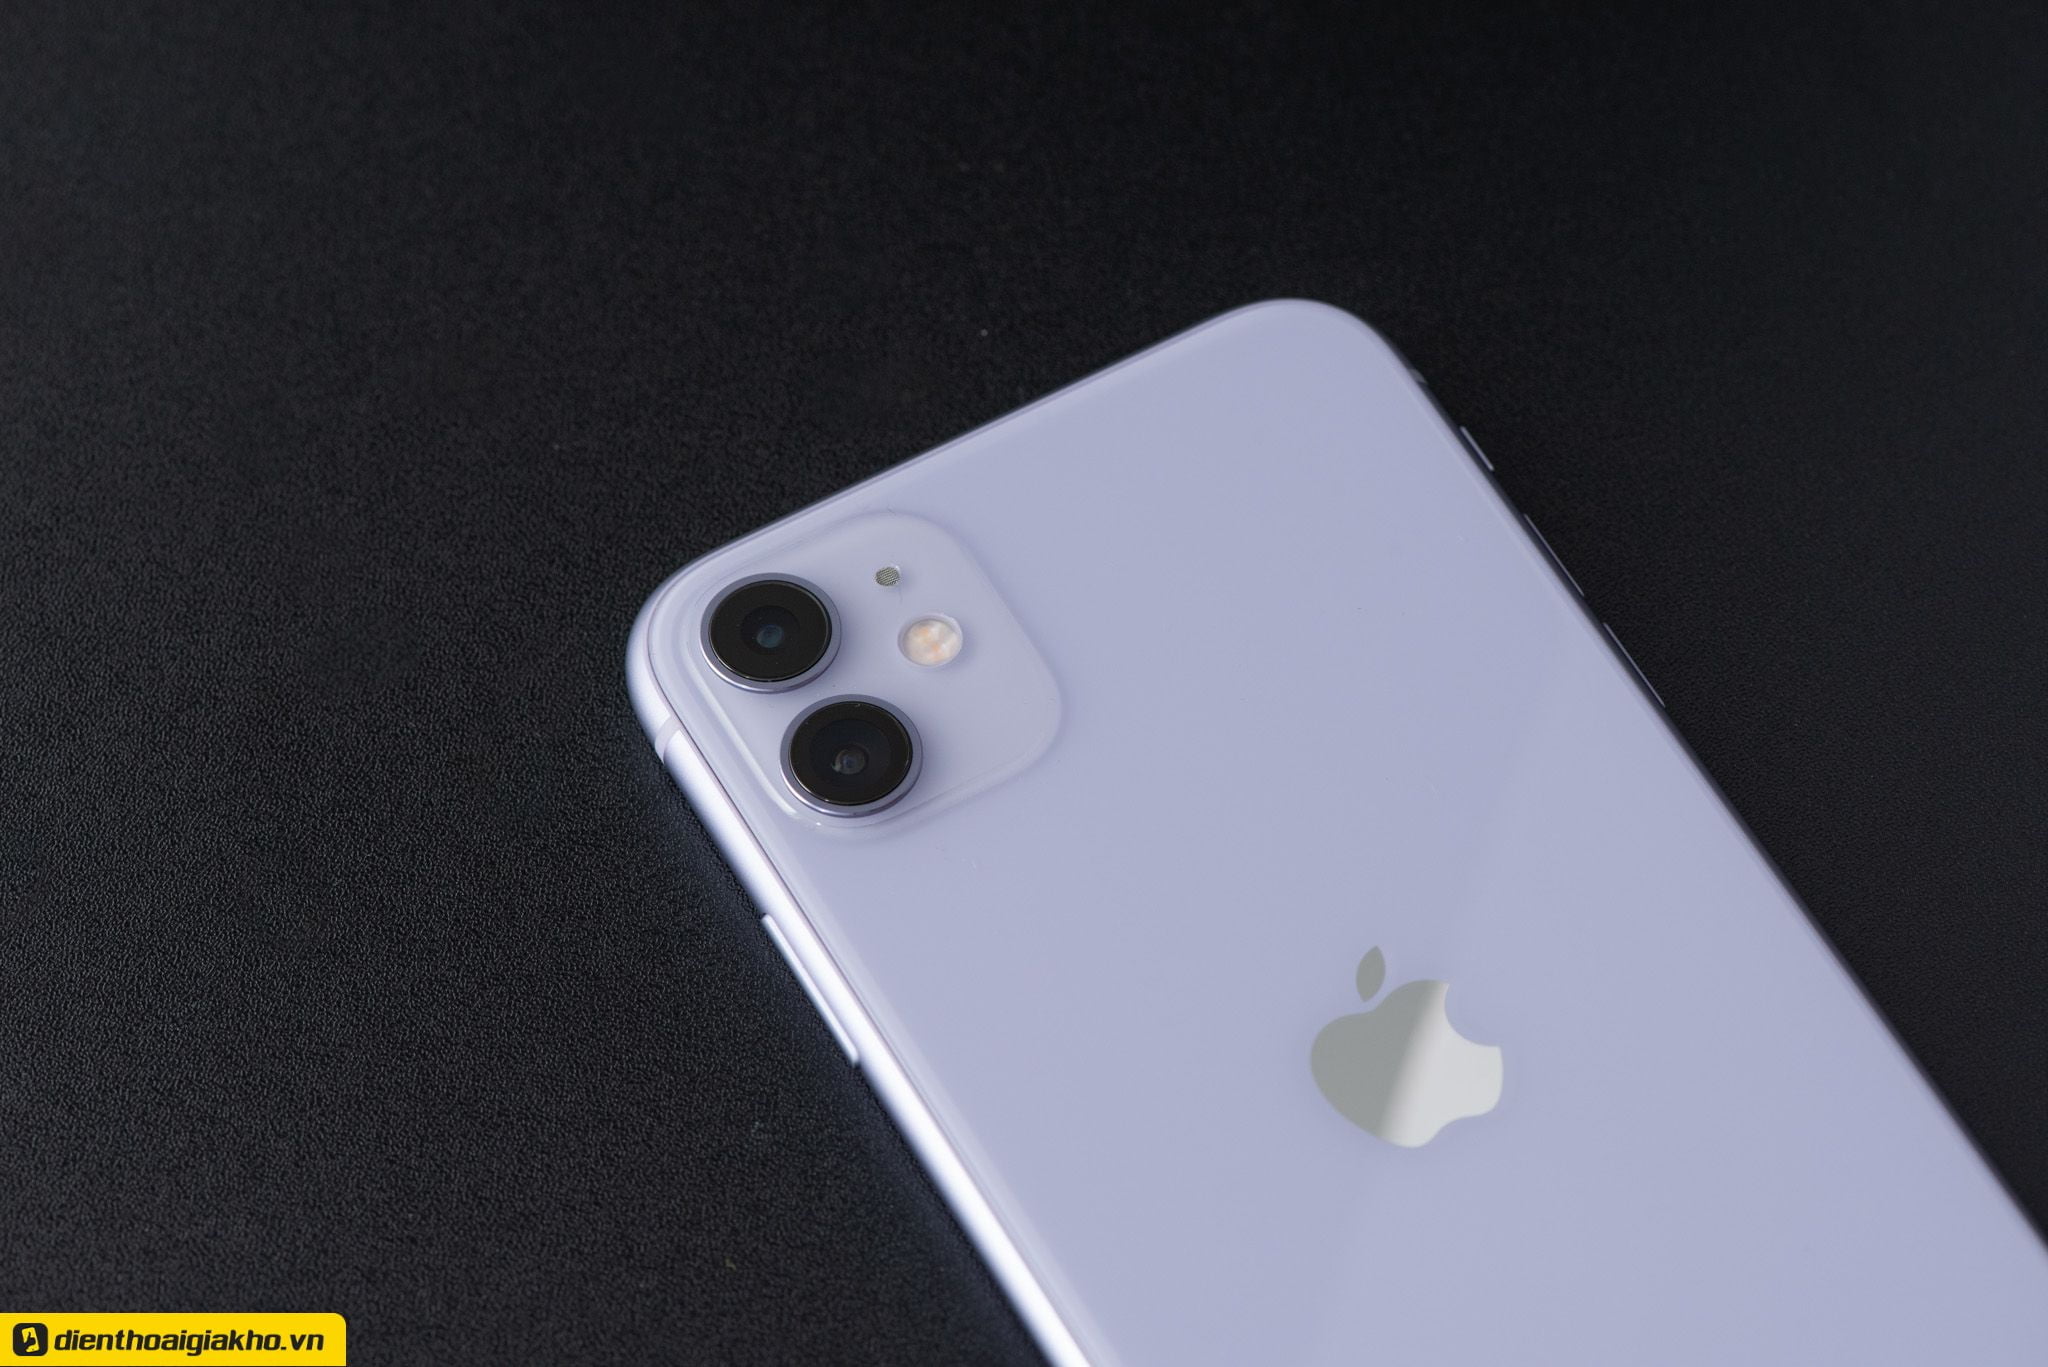 Apple iP11 phiên bản màu tím sở hữu cụm camera kép mặt sau độc đáo